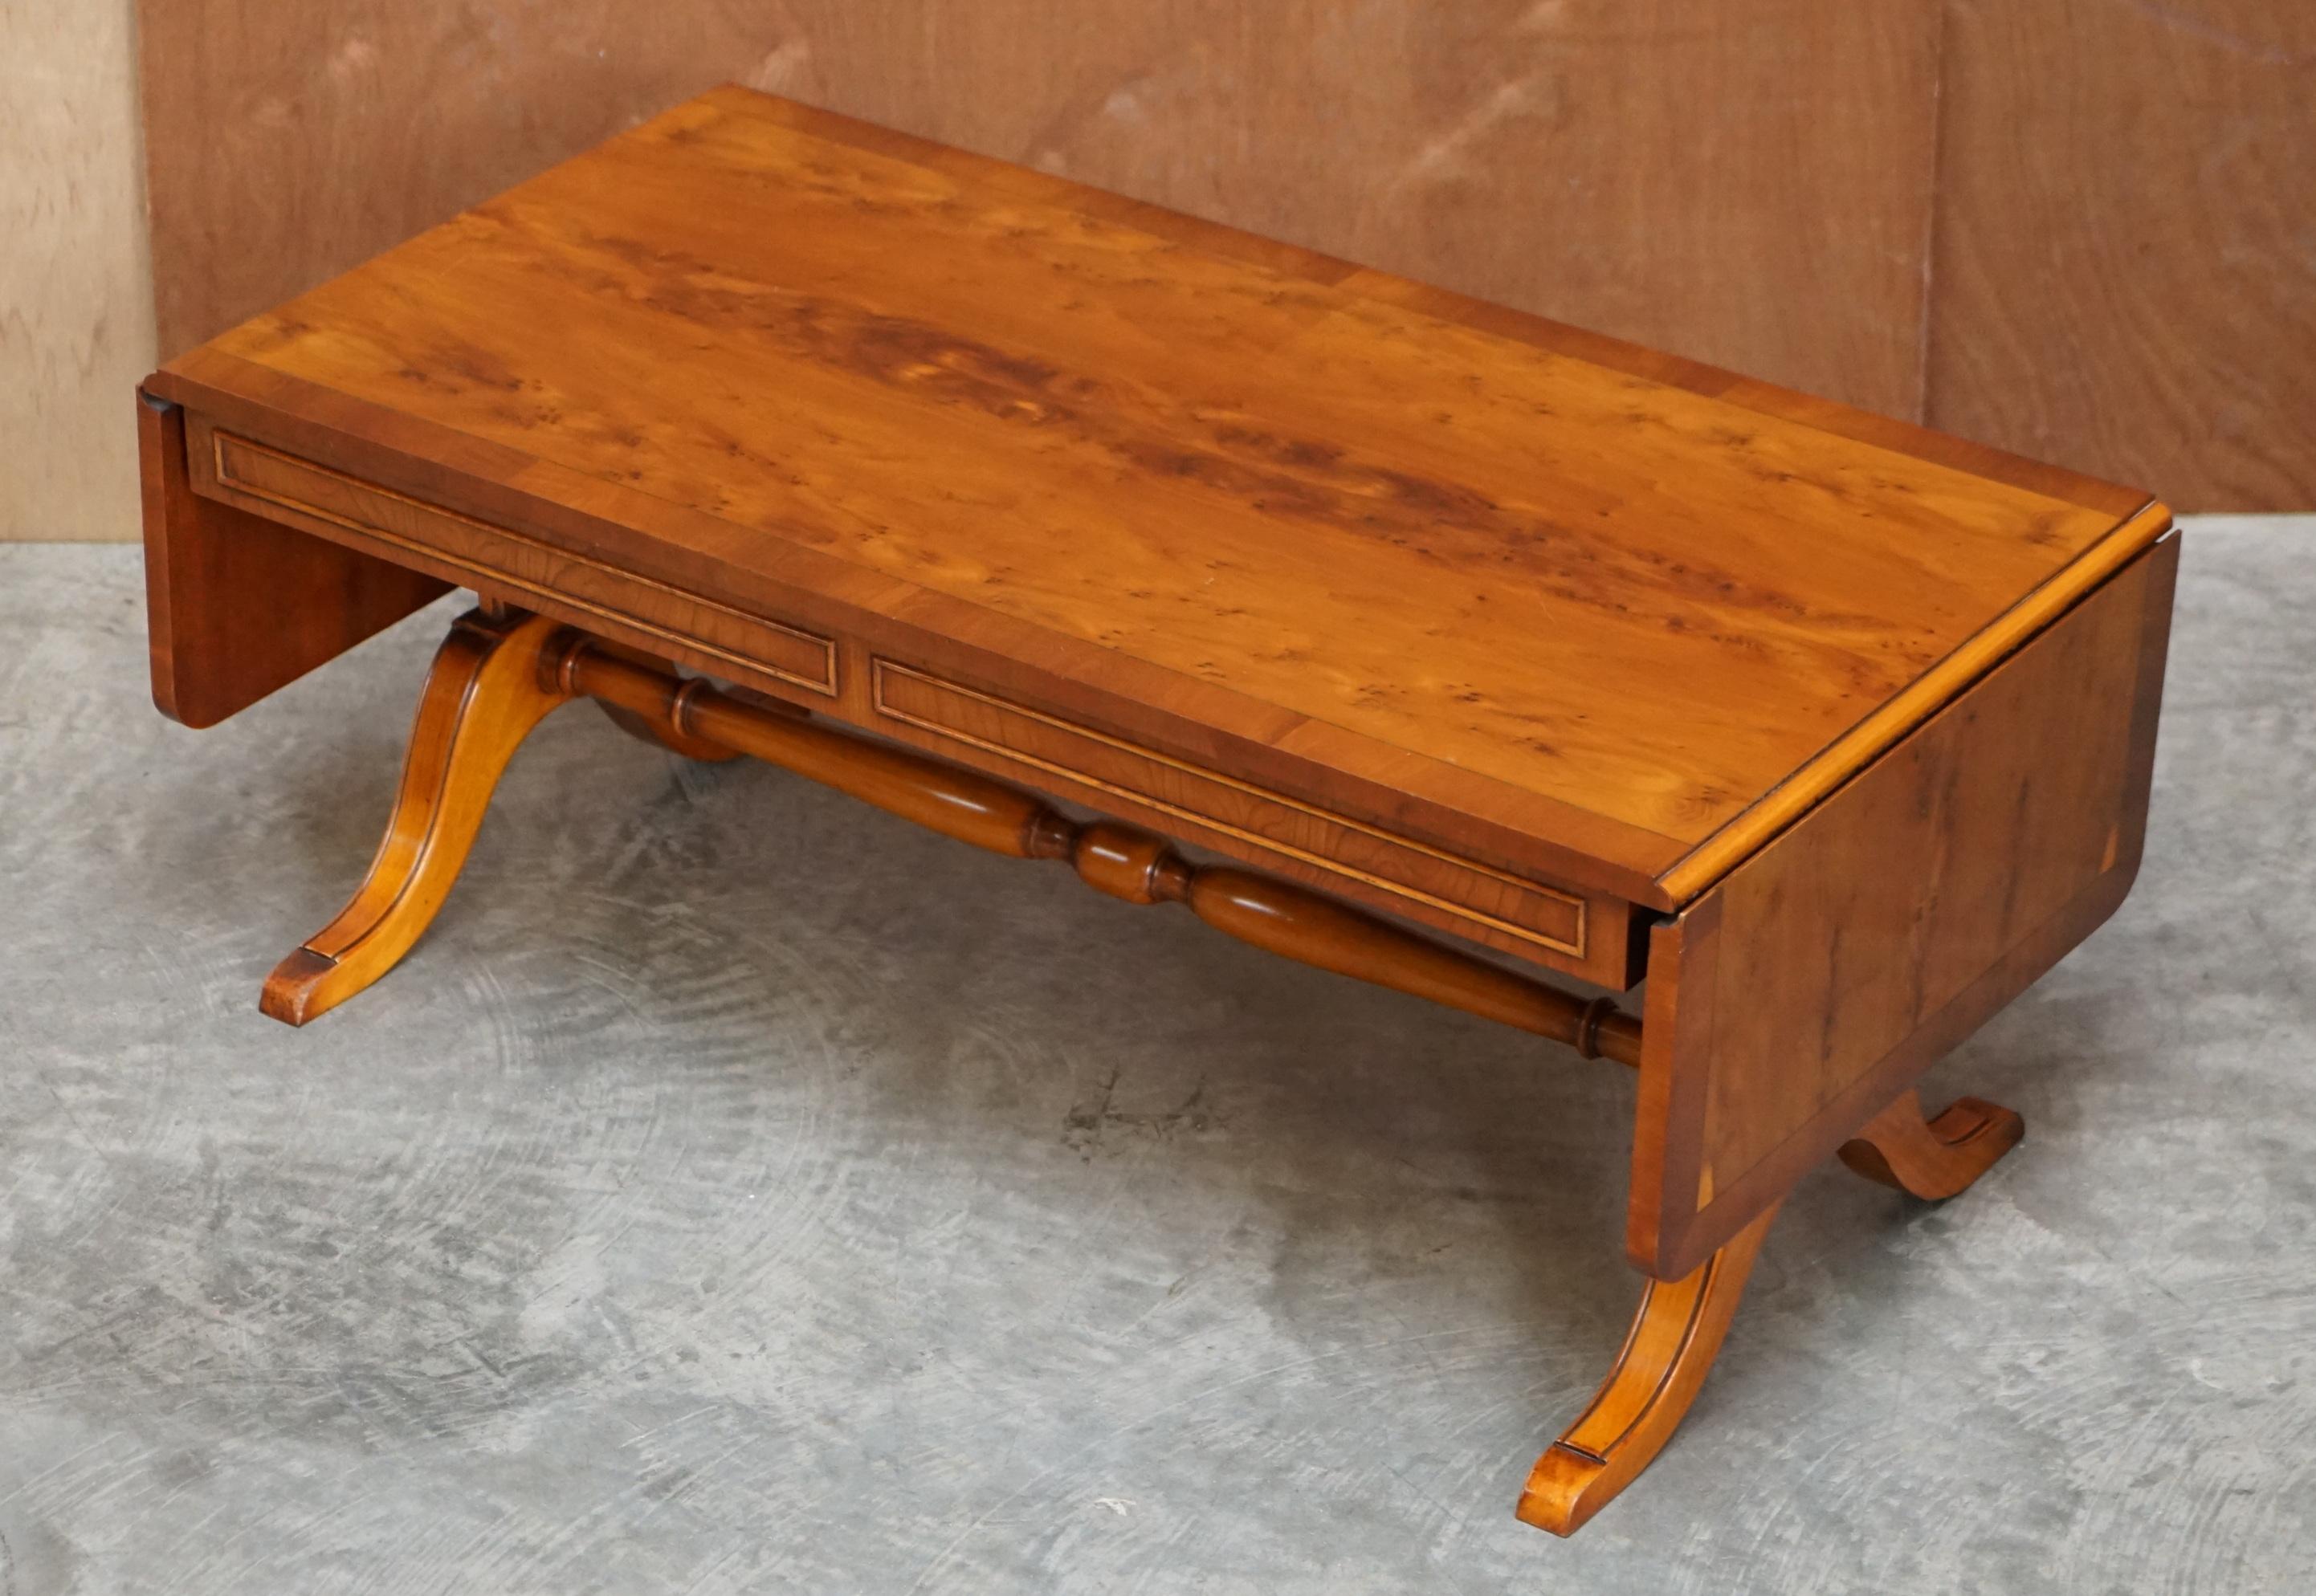 Nous sommes ravis d'offrir à la vente cette table basse à rallonge en loupe d'if de Bevan Funnell, qui fait partie d'une suite.

Il s'agit d'une pièce très bien fabriquée et polyvalente, avec une patine du bois à faire pâlir.

Cette pièce est en